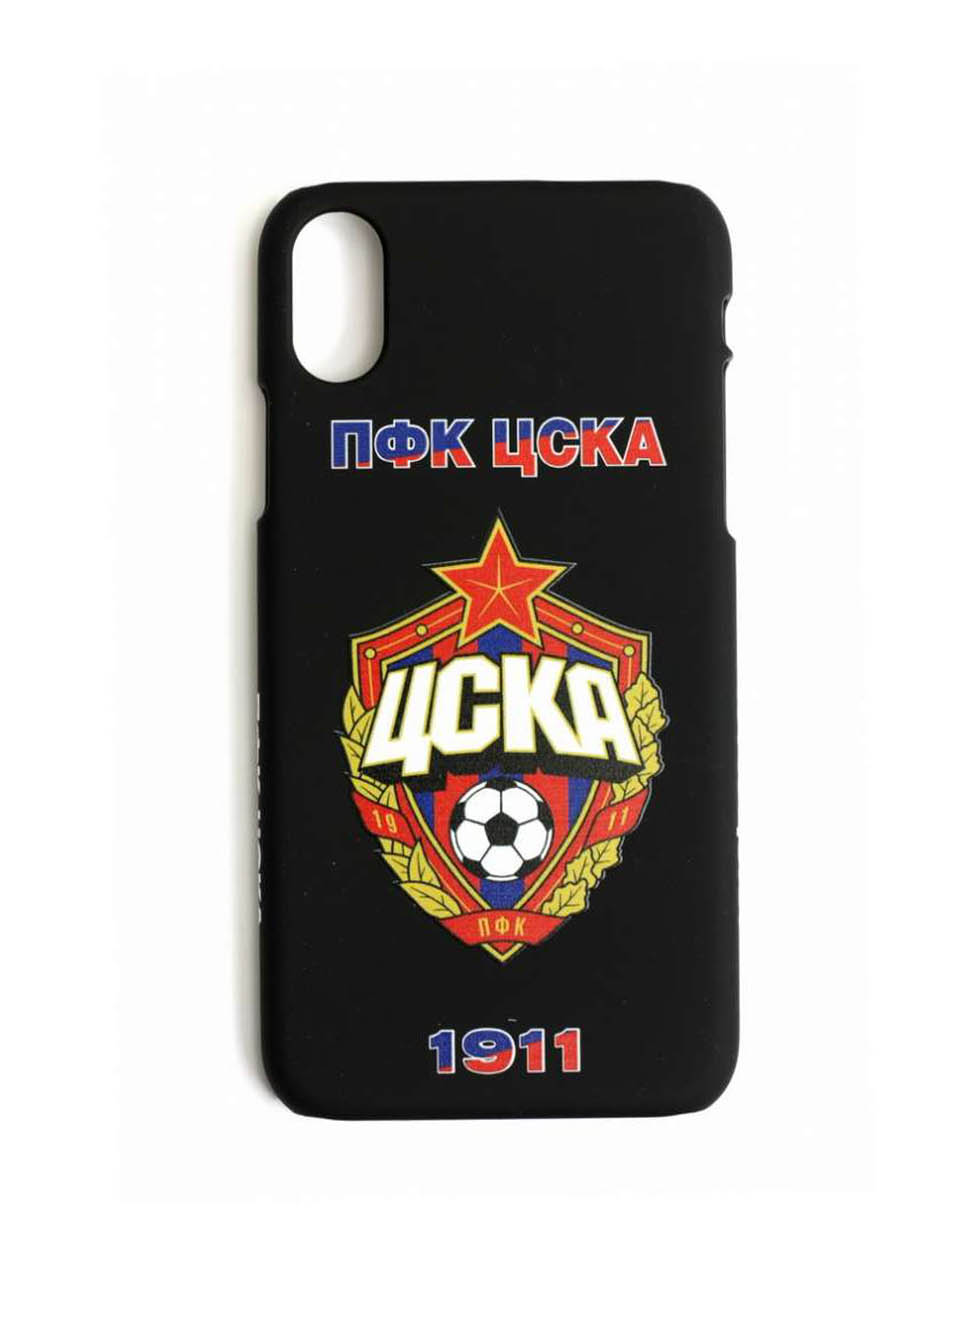 Клип-кейс ПФК ЦСКА 1911 для iPhone, цвет чёрный (IPhone X) ПФК ЦСКА 74212810